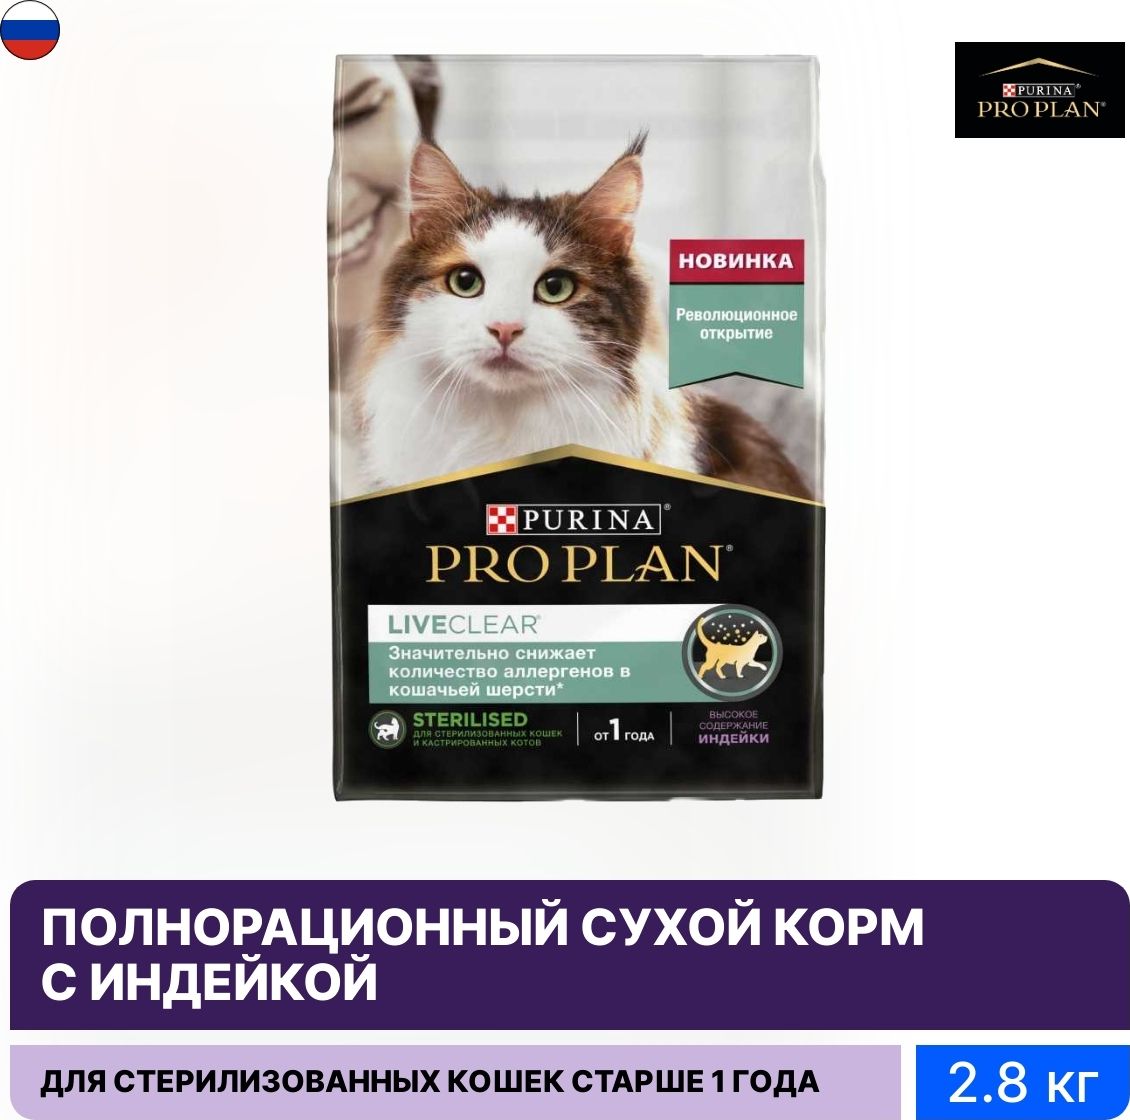 Корм для кошек Pro Plan liveclear. Core для стерилизованных кошек. Purina Pro Plan реклама. Корм Проплан liveclear д/стерил Кош с индейкой 1,4кг.